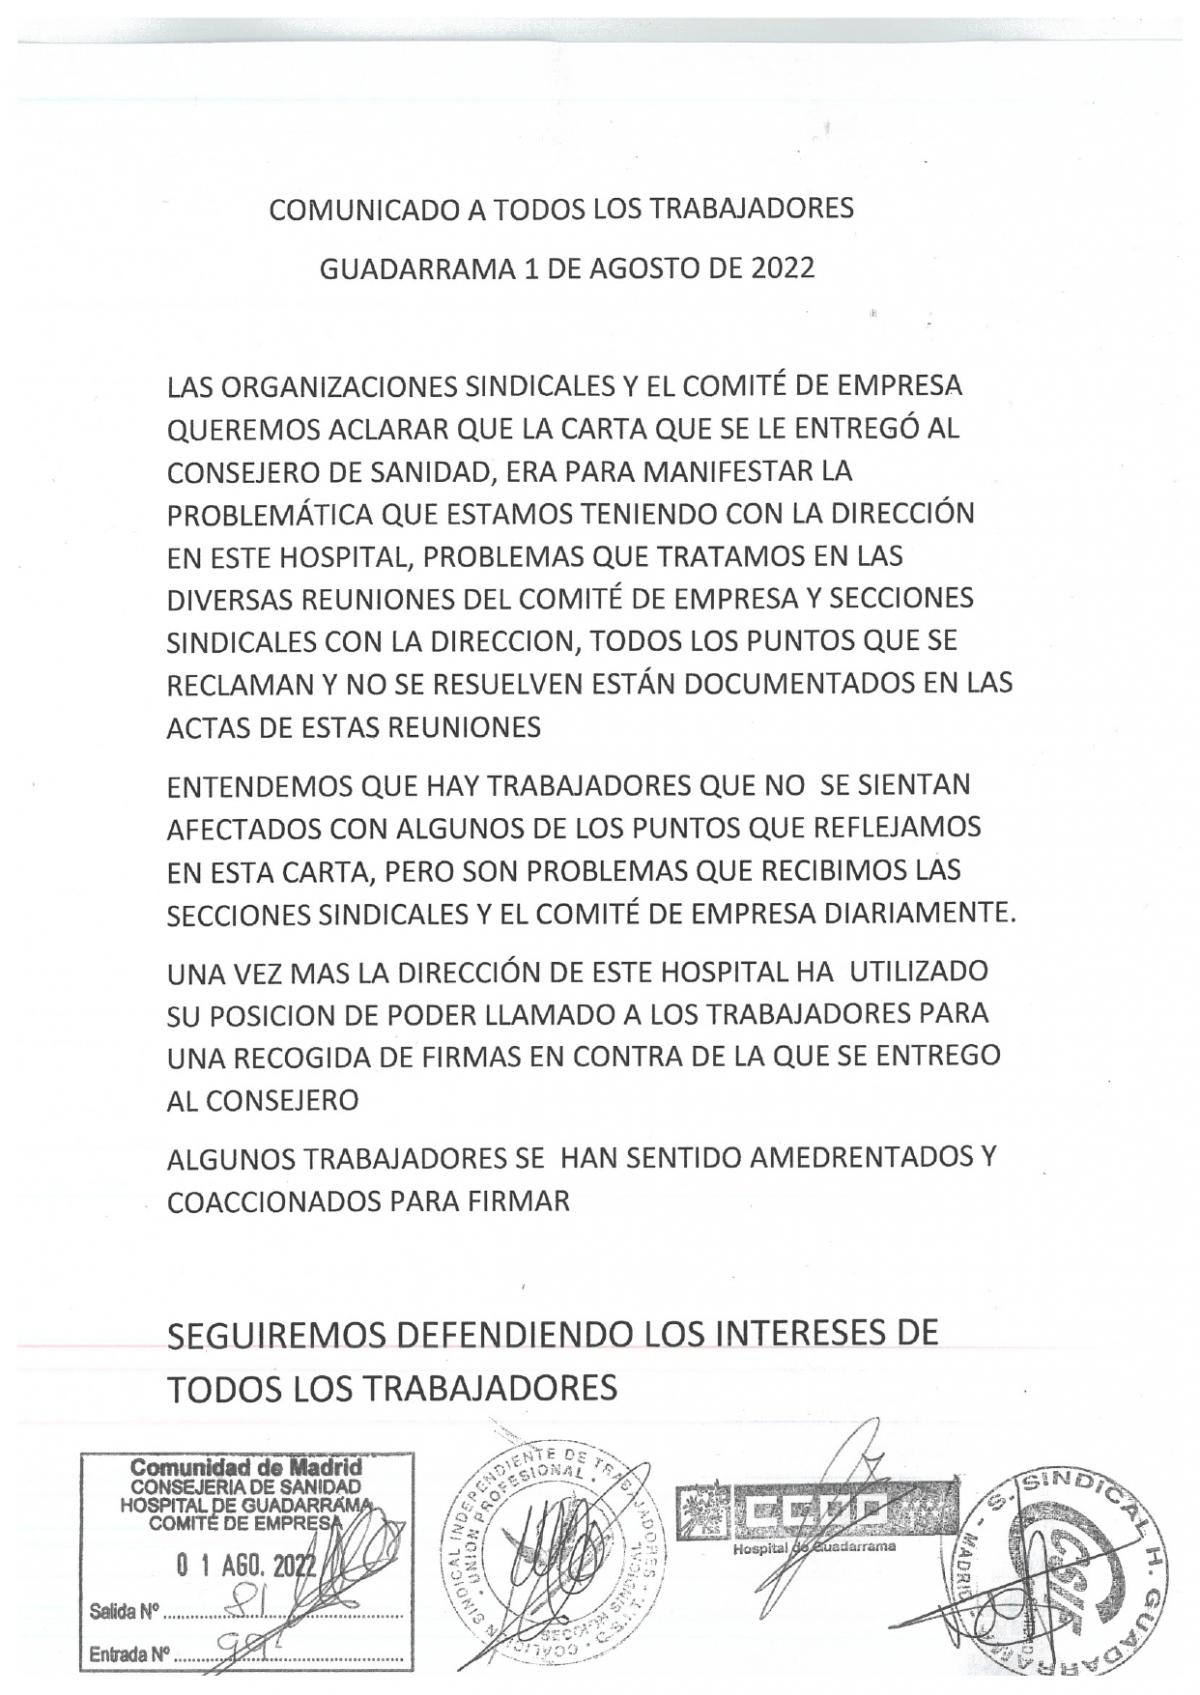 Imagen del comunicado del Comité de Empresa del Hospital de Guadarrama